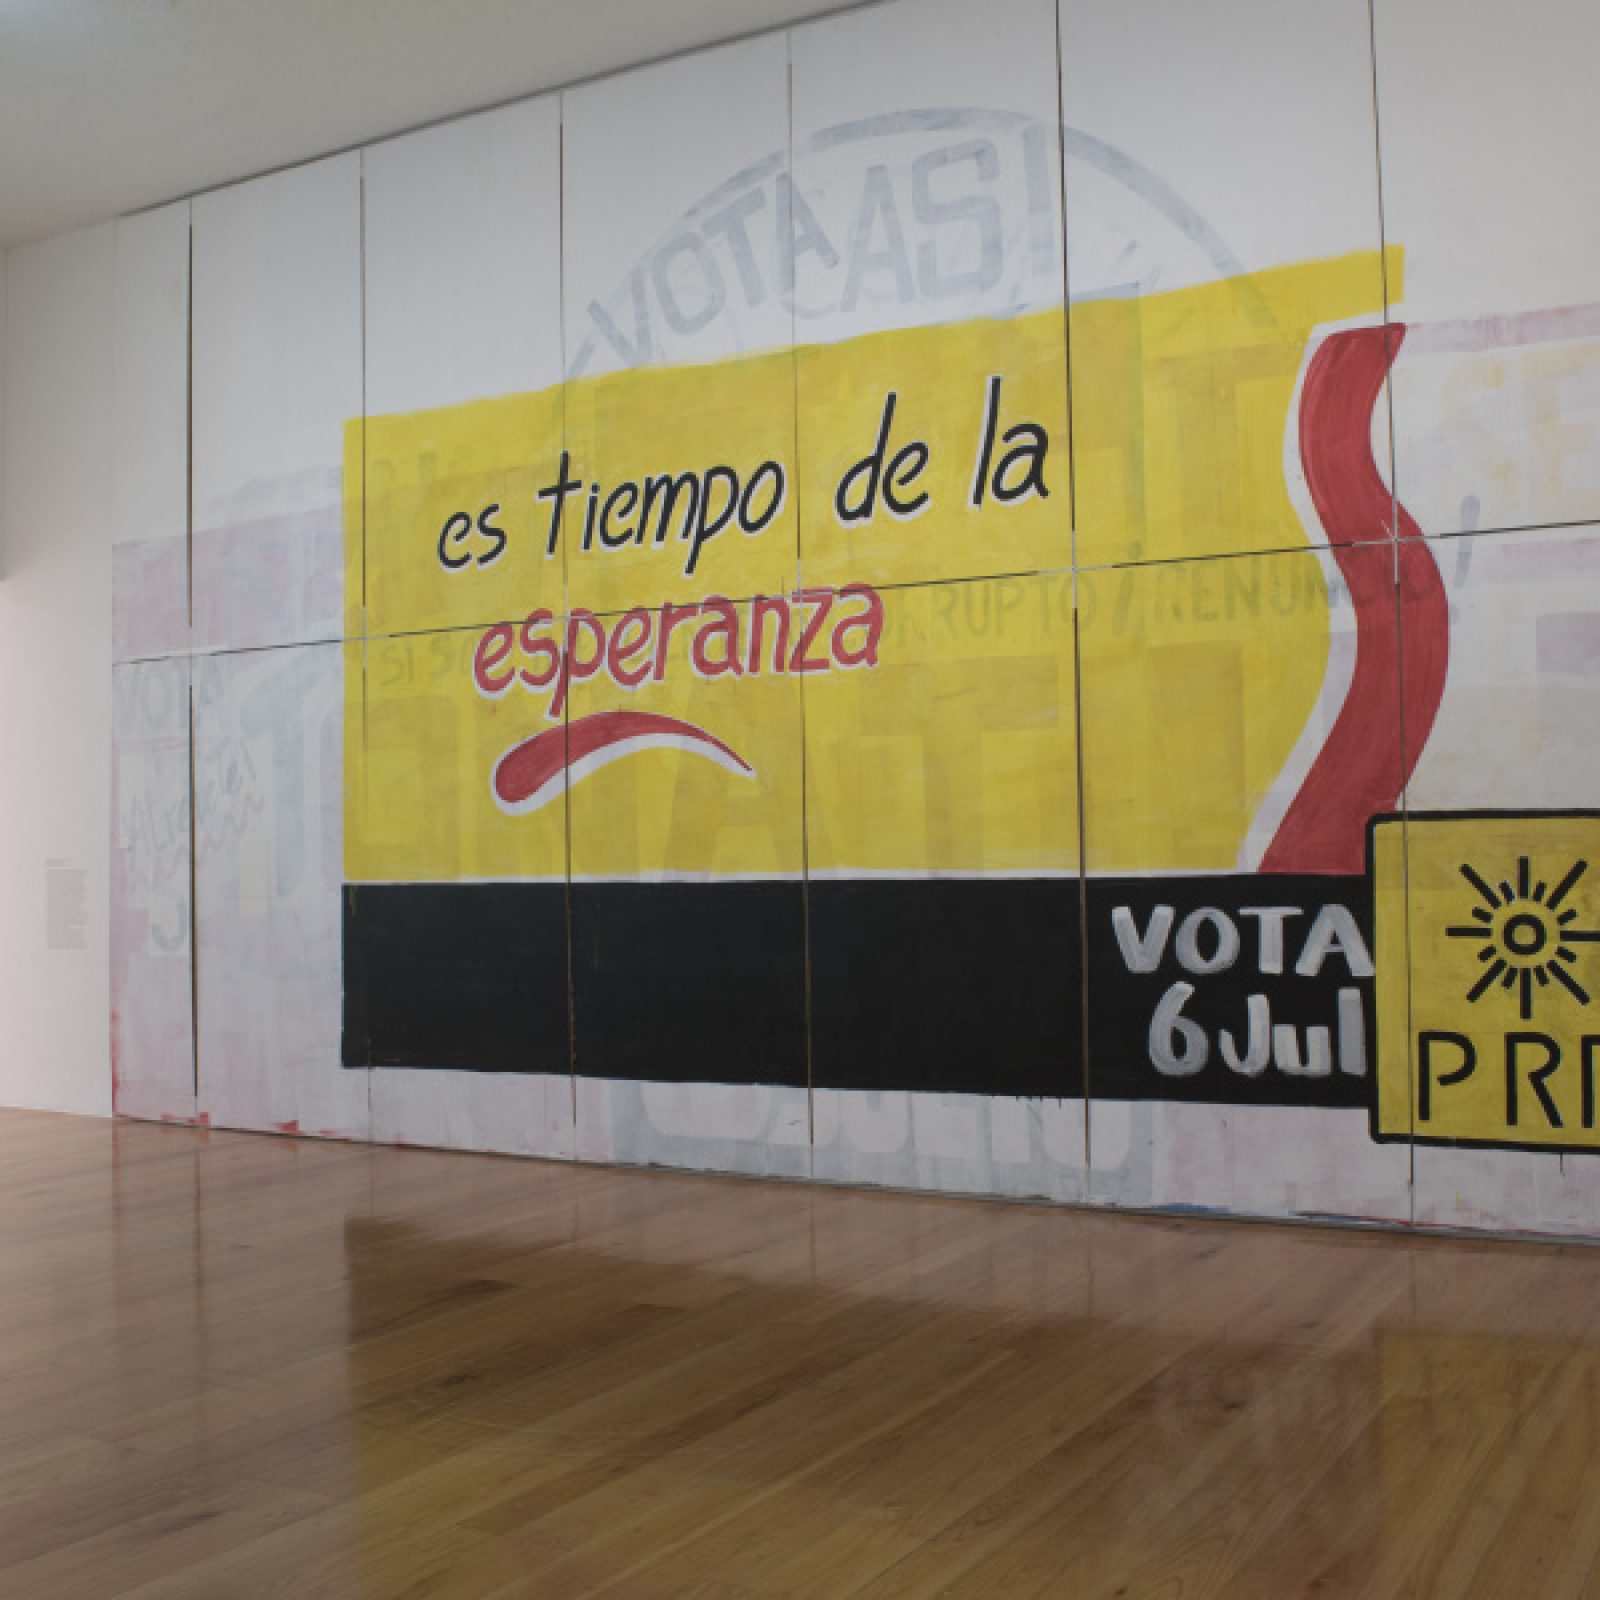 Vista de la exposición "Obra inconclusa", de Tercerunquinto, en el MARCO, Monterrey, México, 2018-2019. Foto cortesía de MARCO